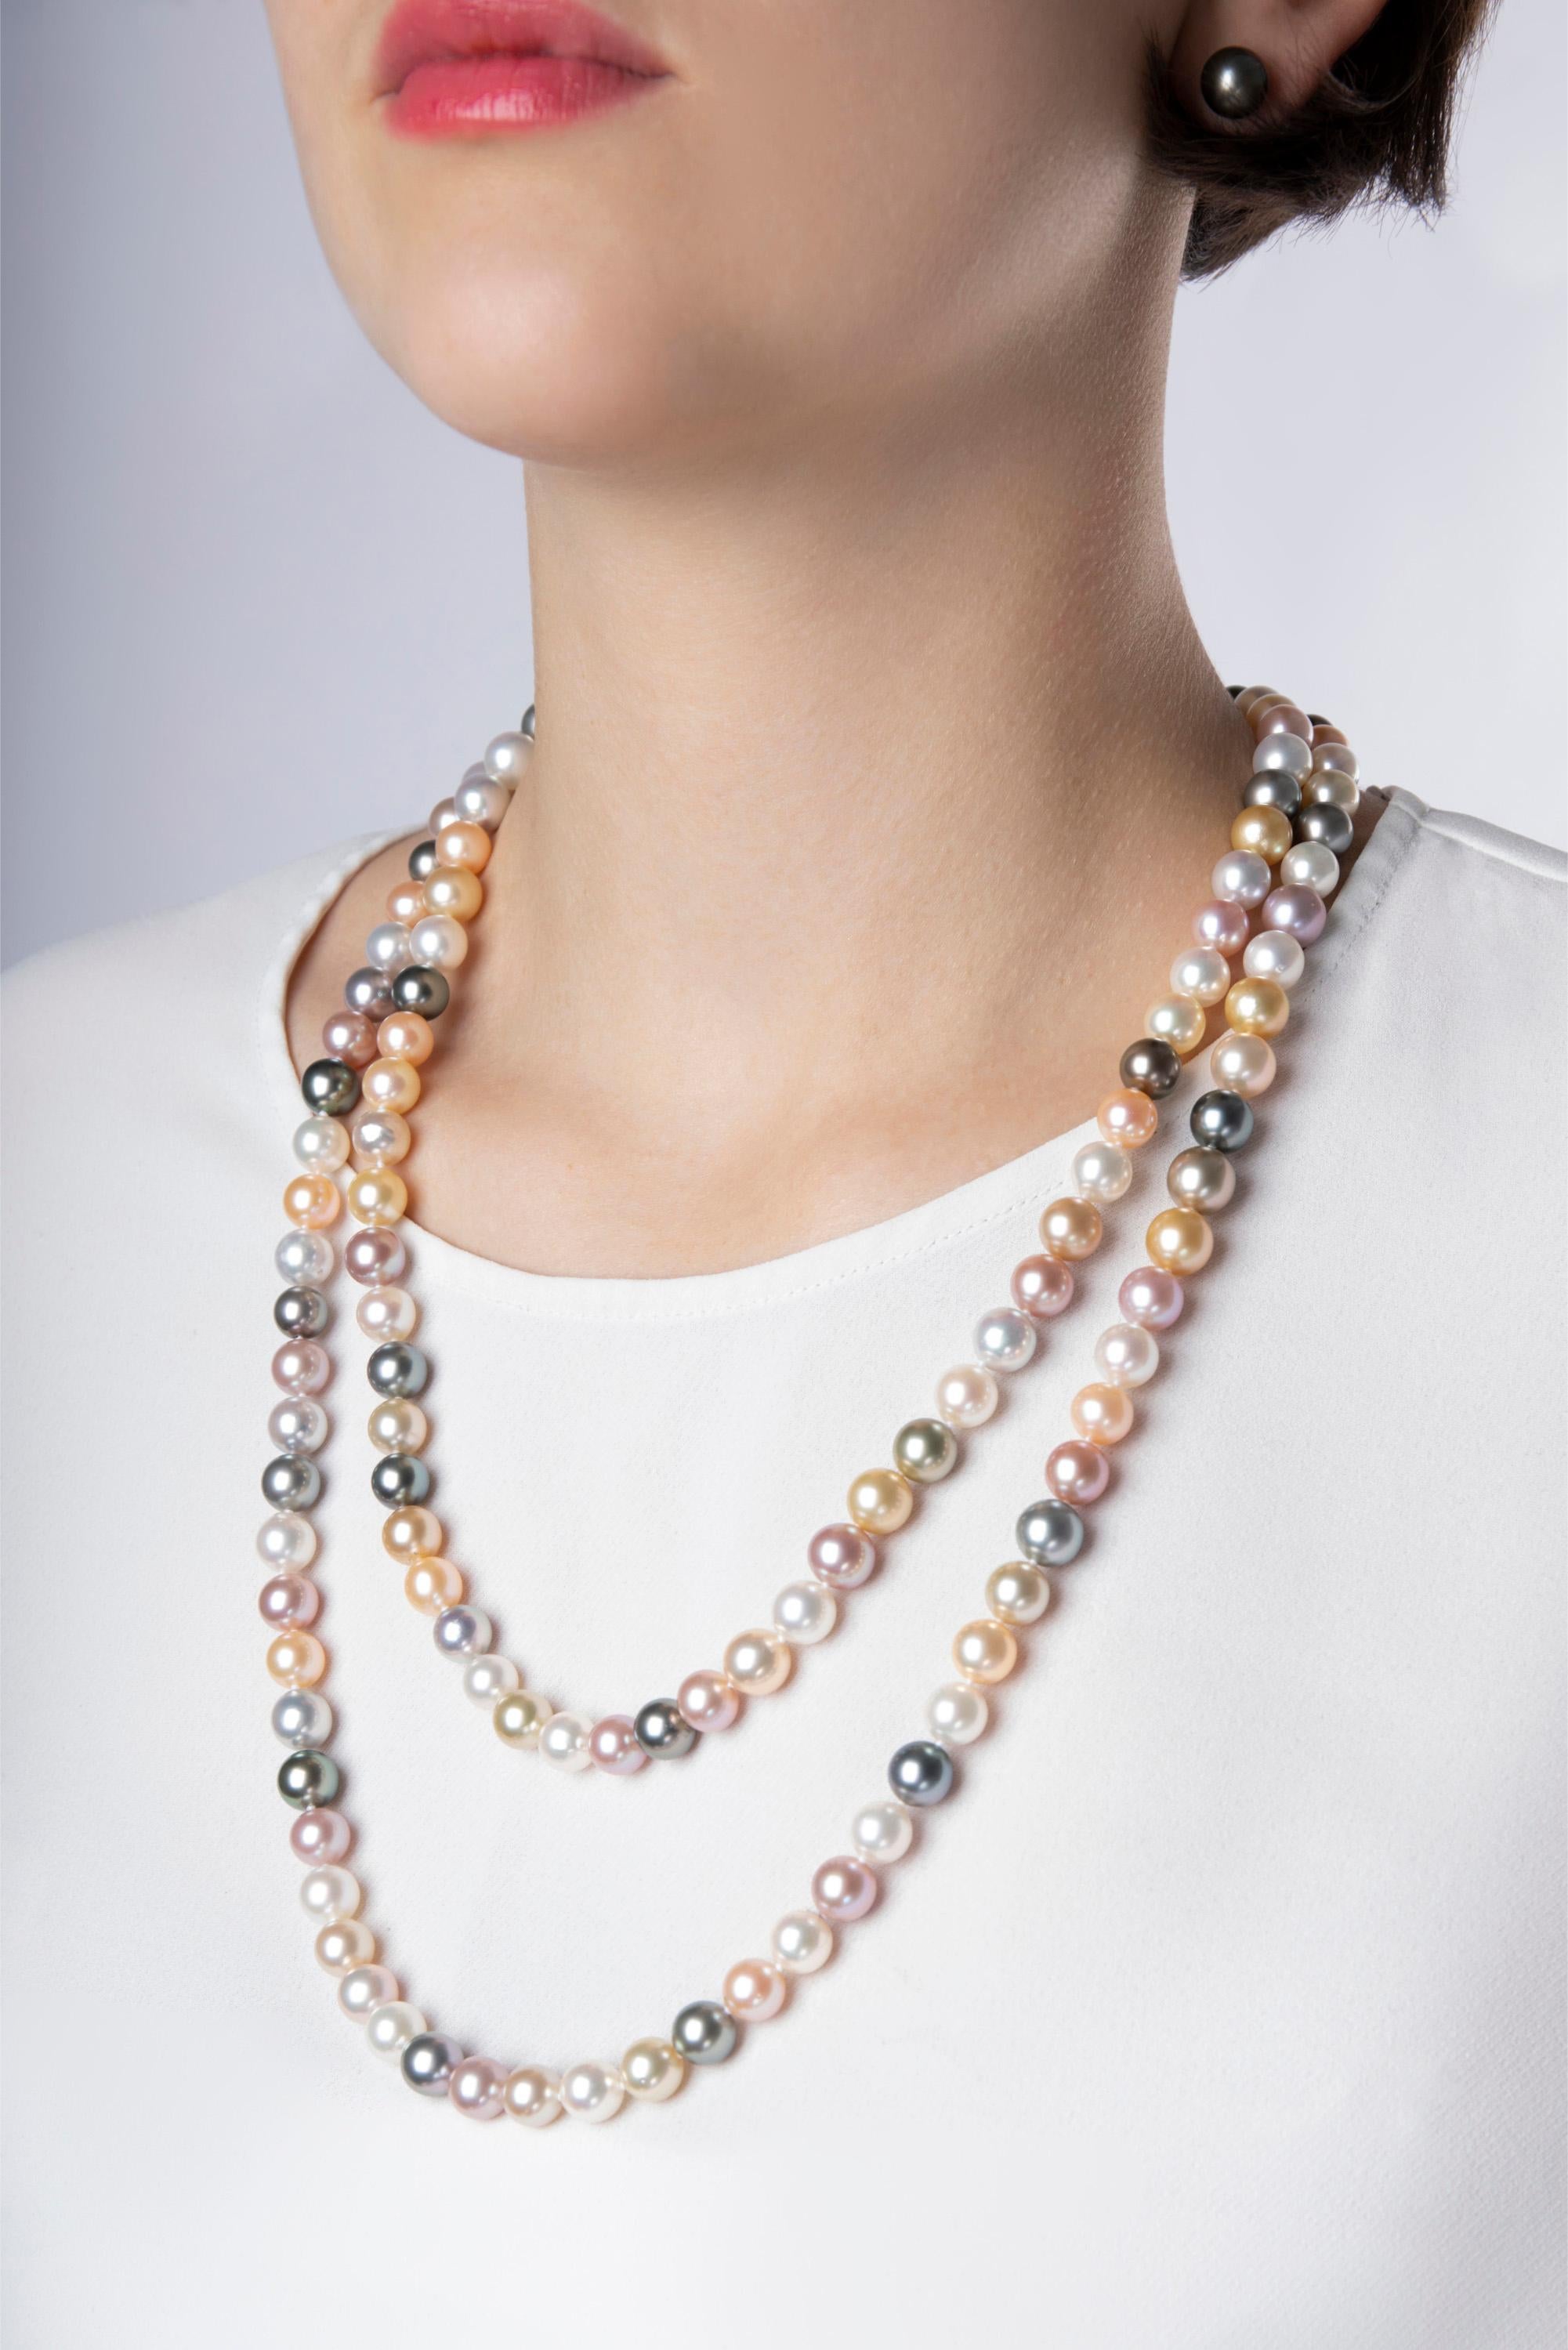 Ce collier ludique de Yoko London est composé de perles de Tahiti, de perles blanches et dorées des mers du Sud et de perles roses d'eau douce. Il s'agit d'un charmant collier long qui peut être enroulé deux fois autour du cou. Chaque perle a été